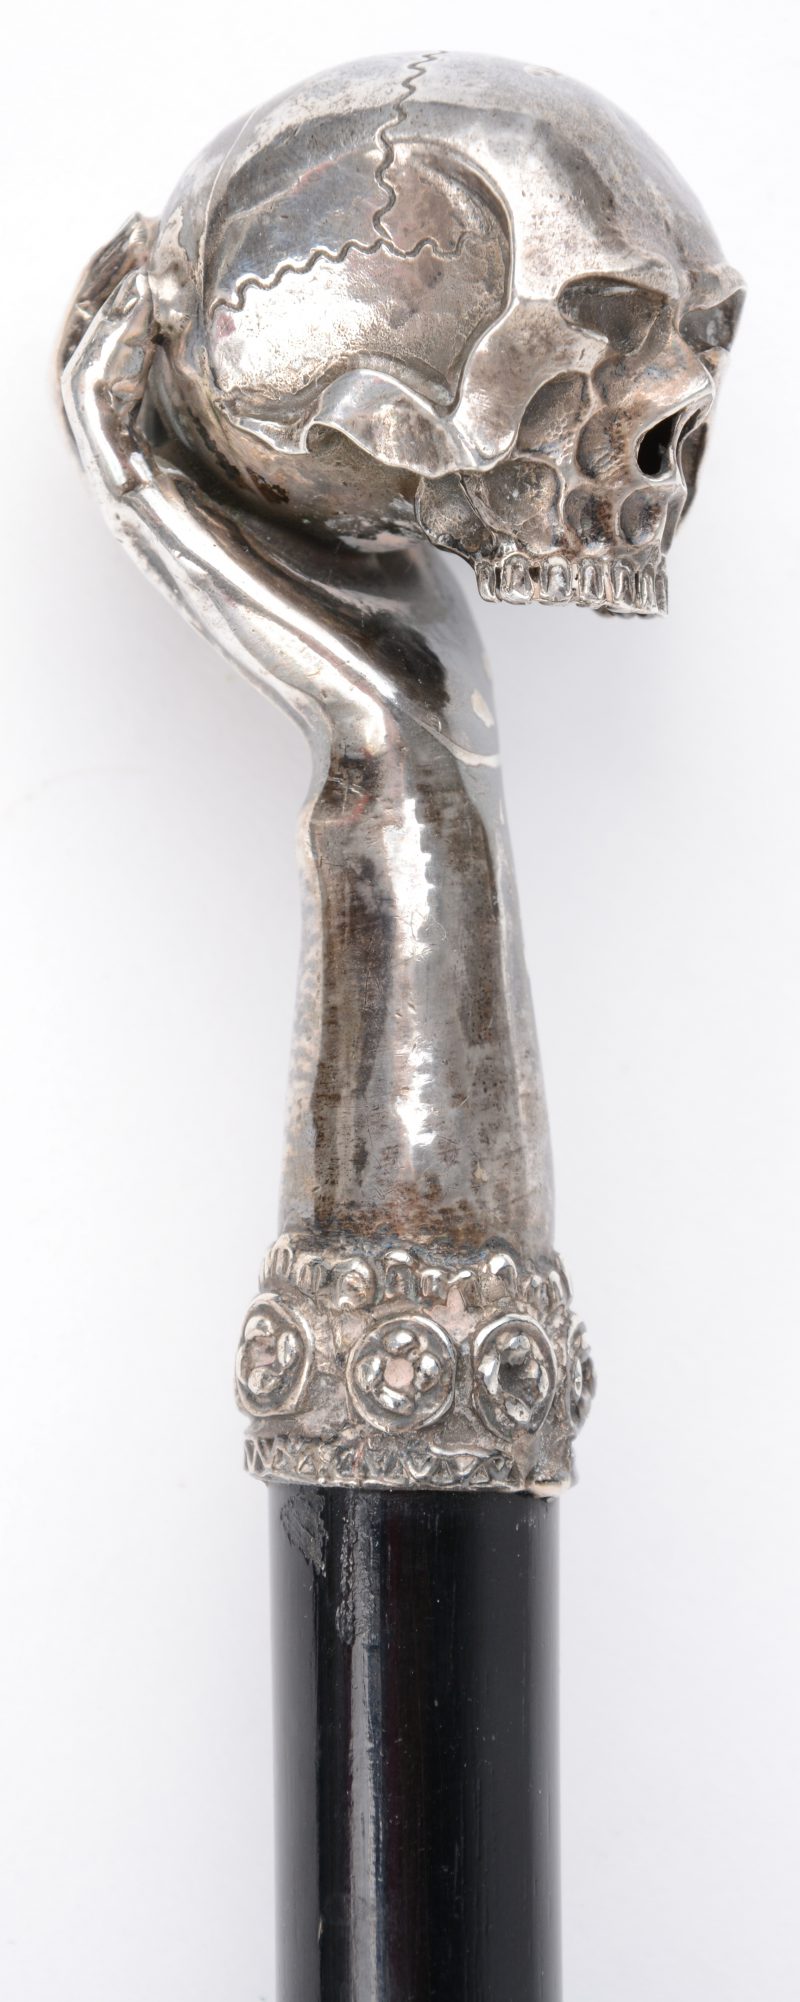 Een wandelstok met zilveren handgreep in de vorm van een hand met een schedel.